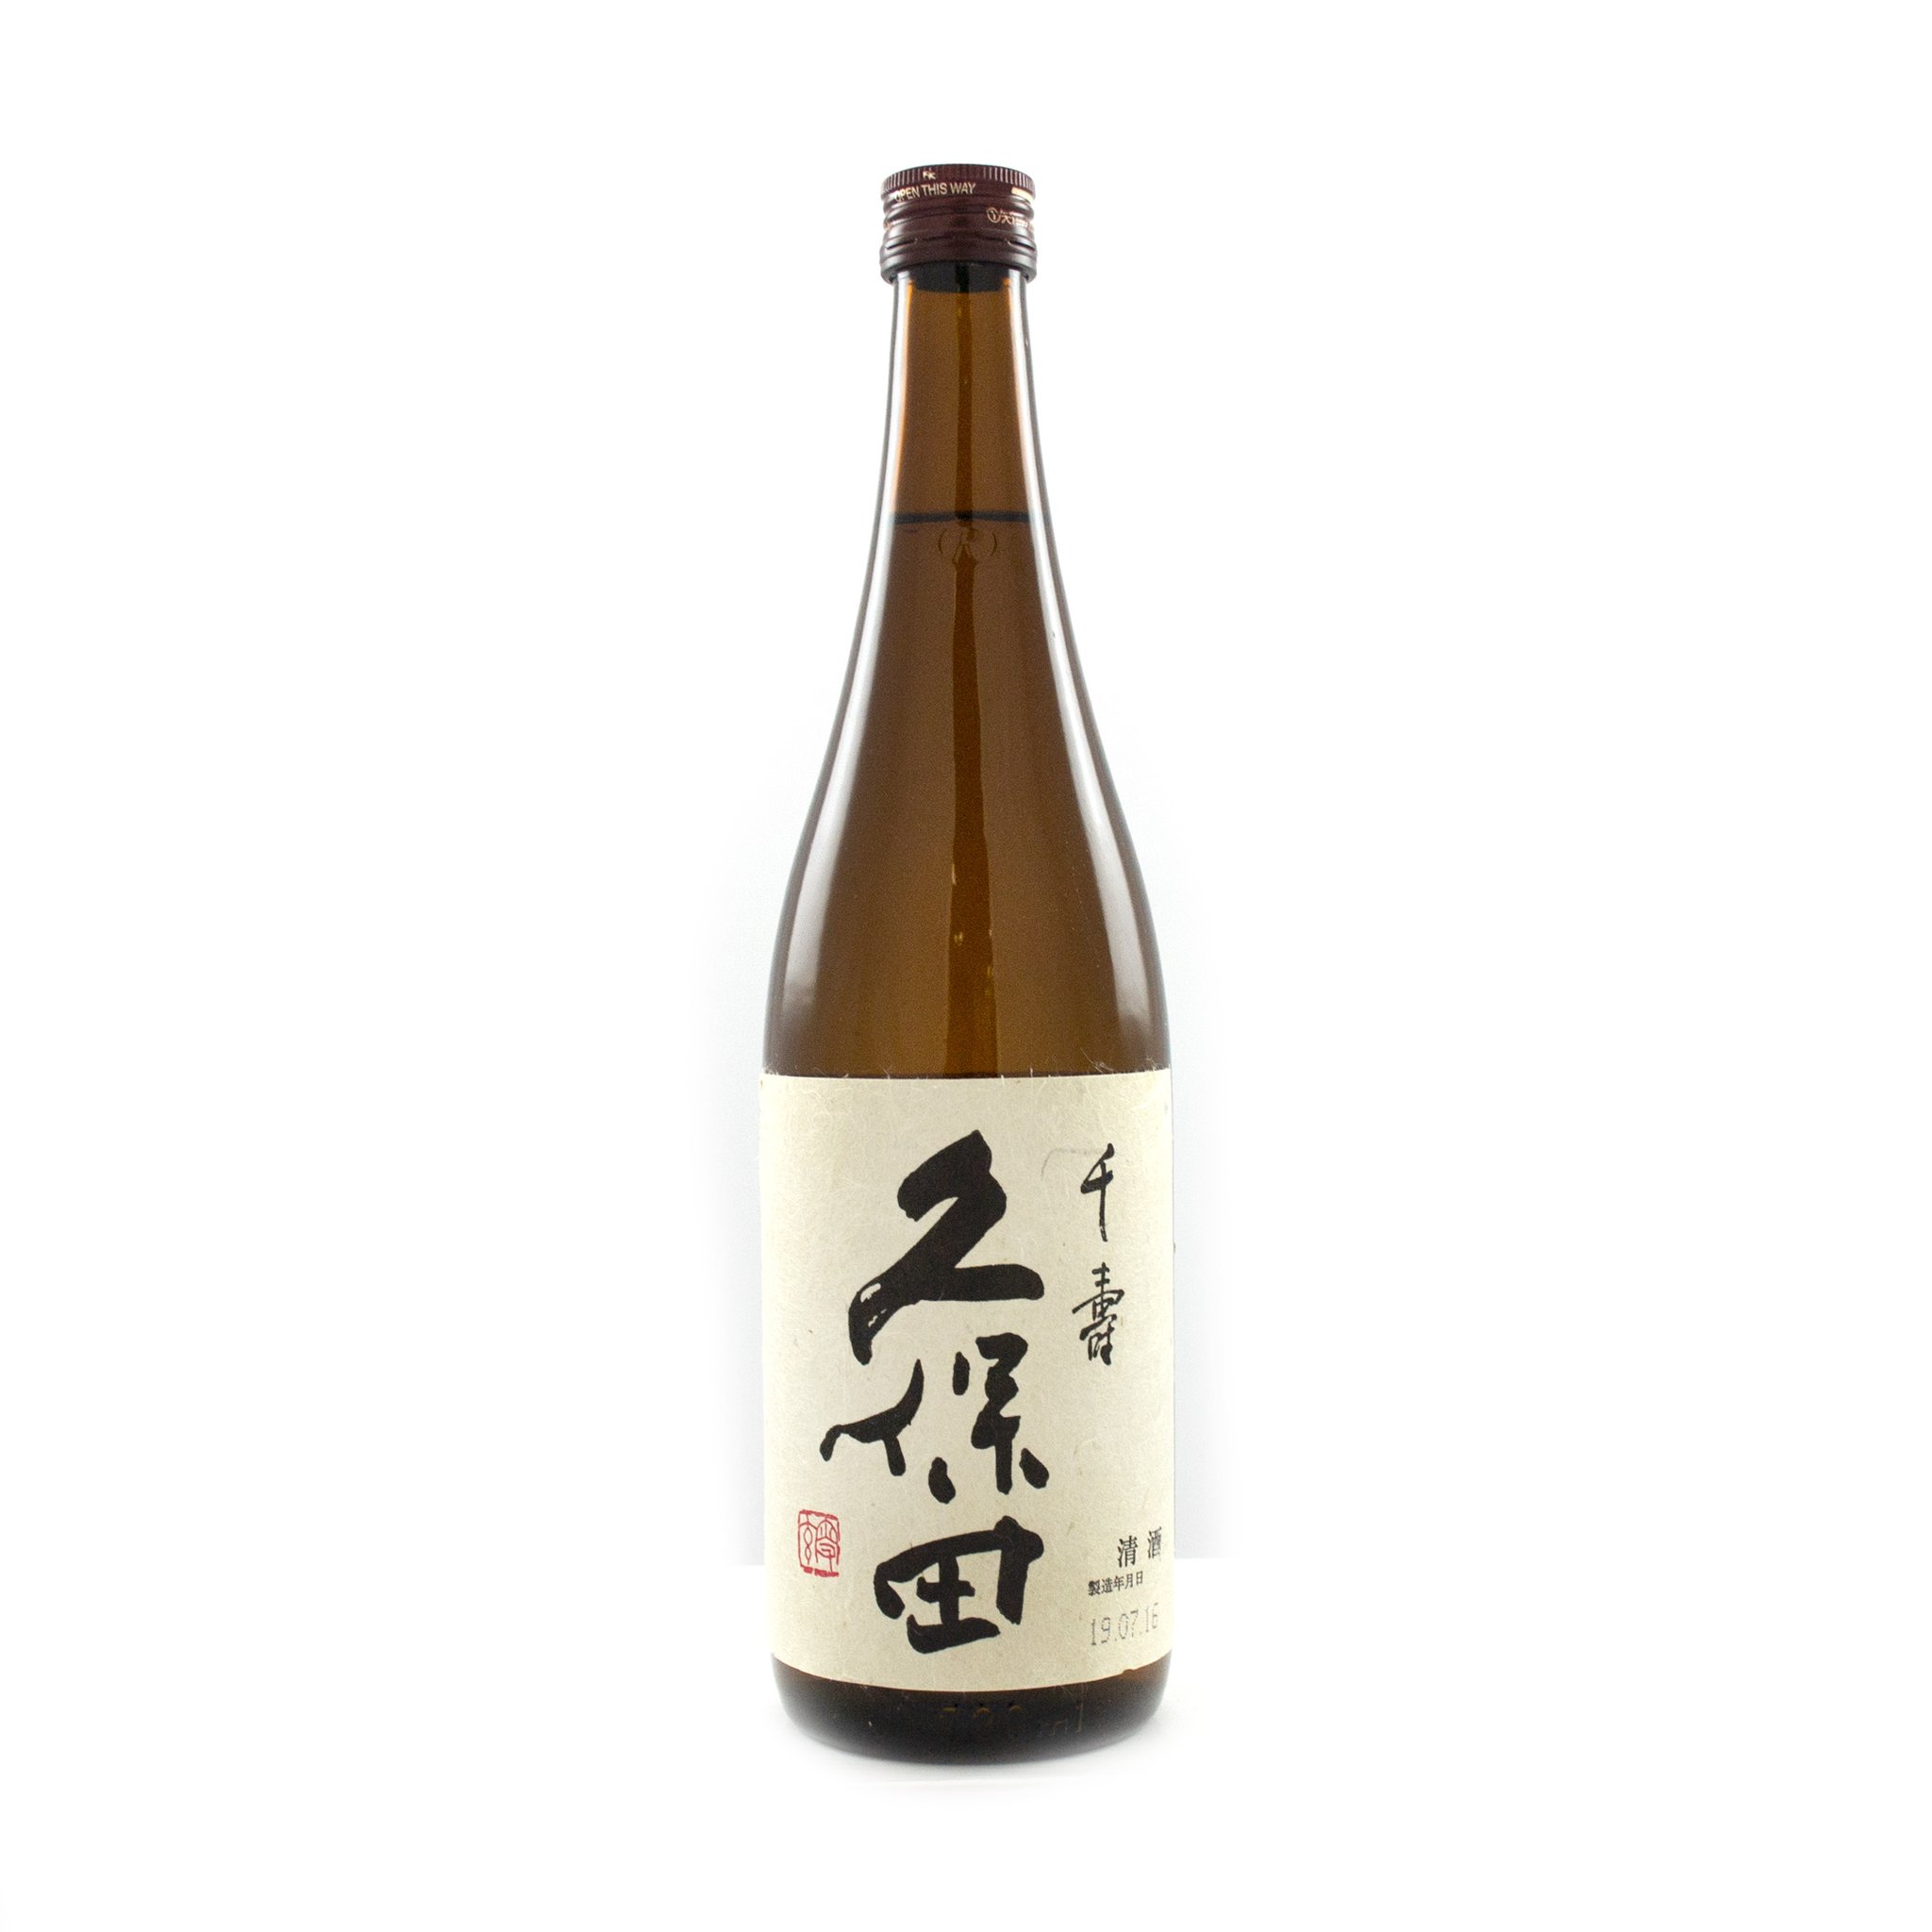 Kubota Senjyu Ginjo Sake 720ml 15.6%